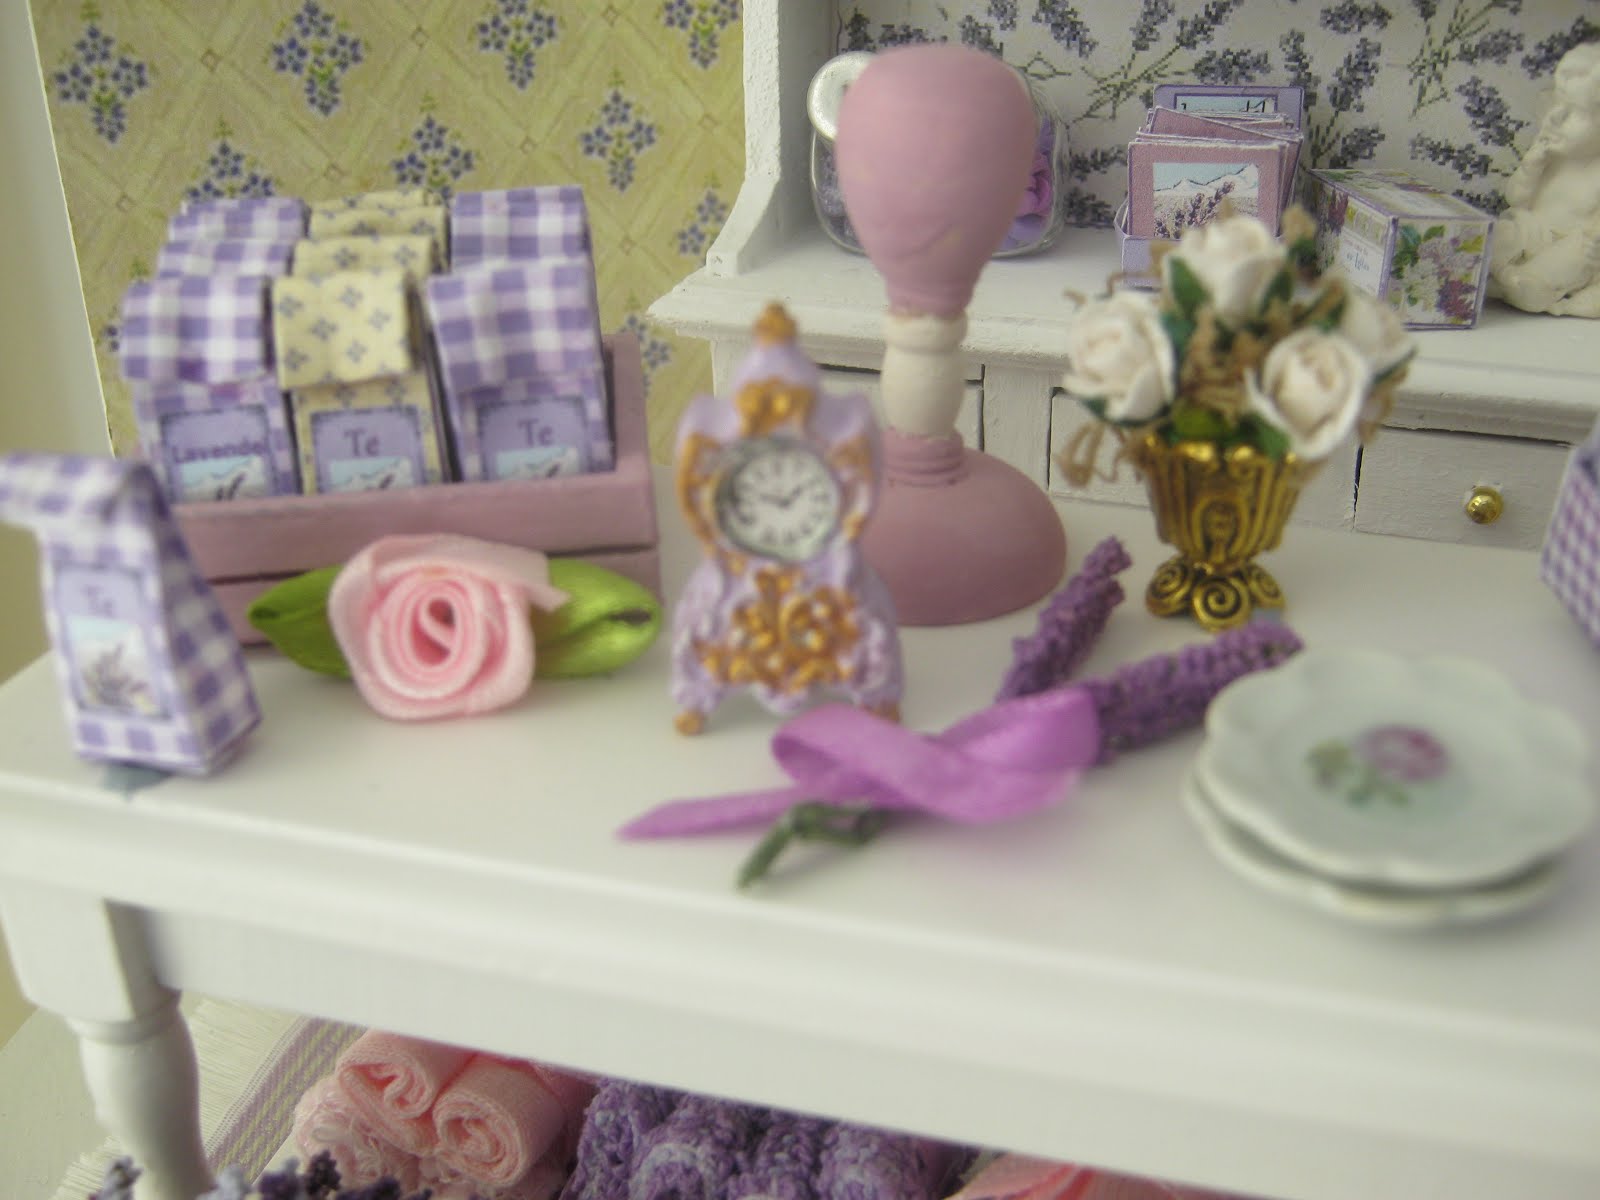 Wyrnas Lavender shop